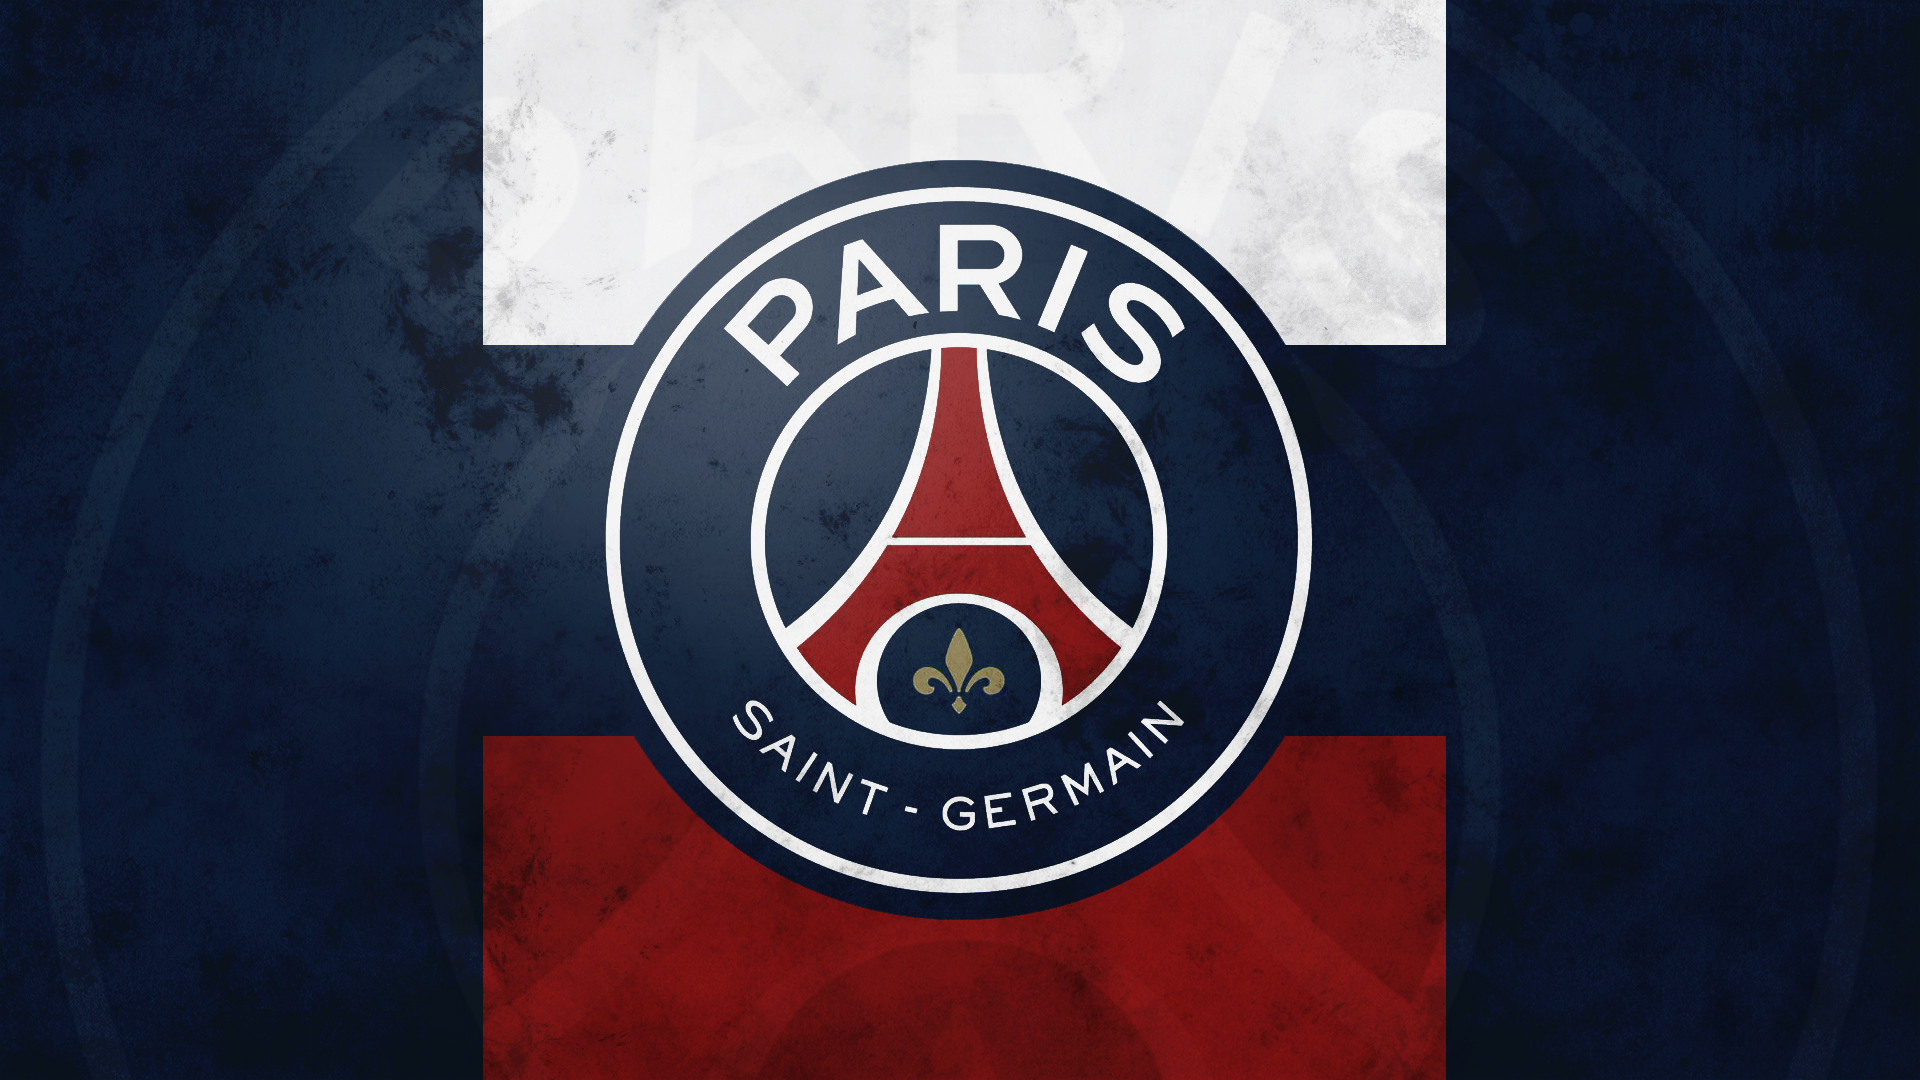 Paris Saint-Germain F.C. Wallpapers